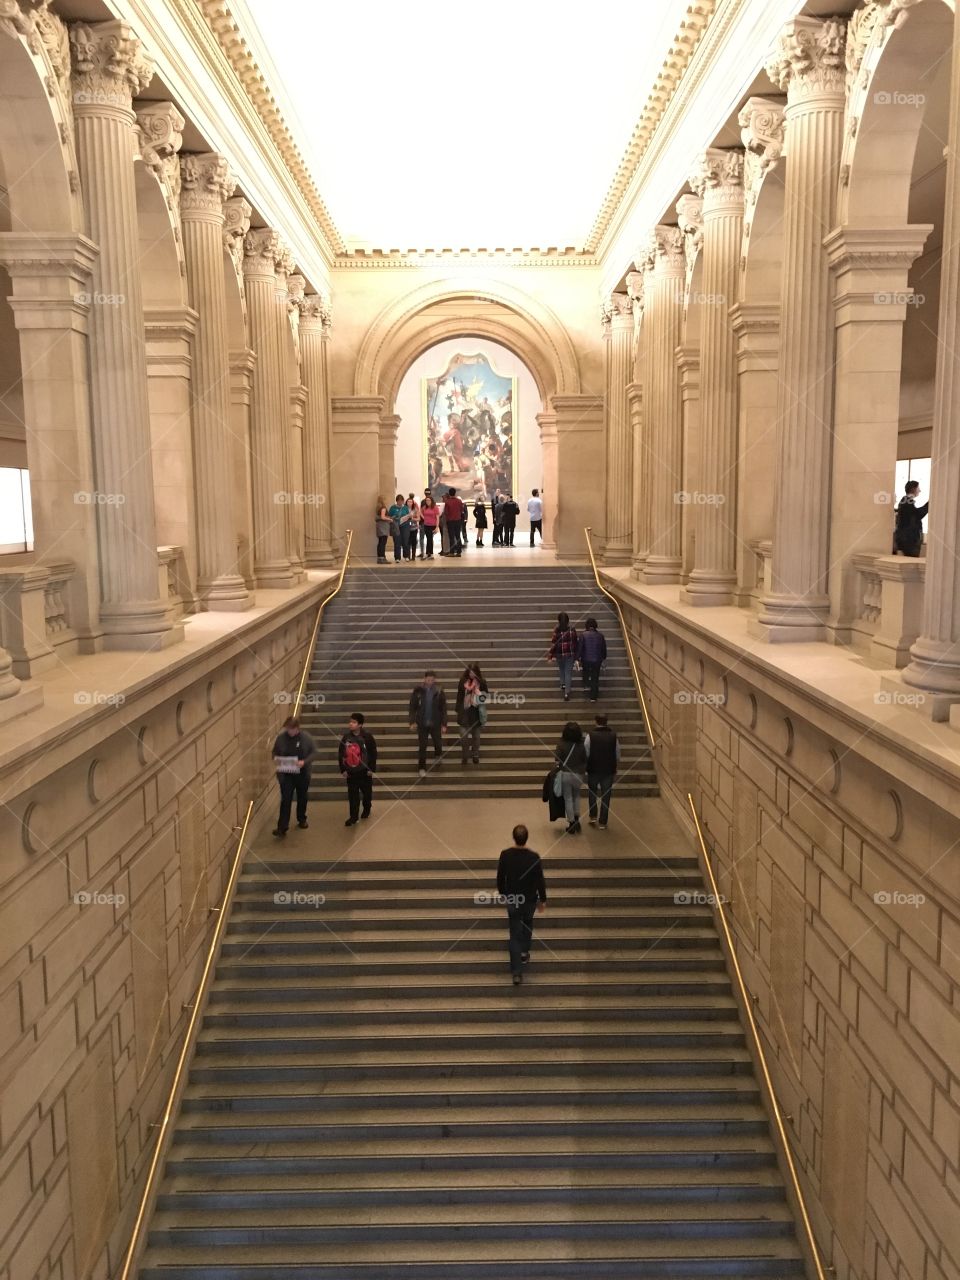 The Metropolitan Museum of Art